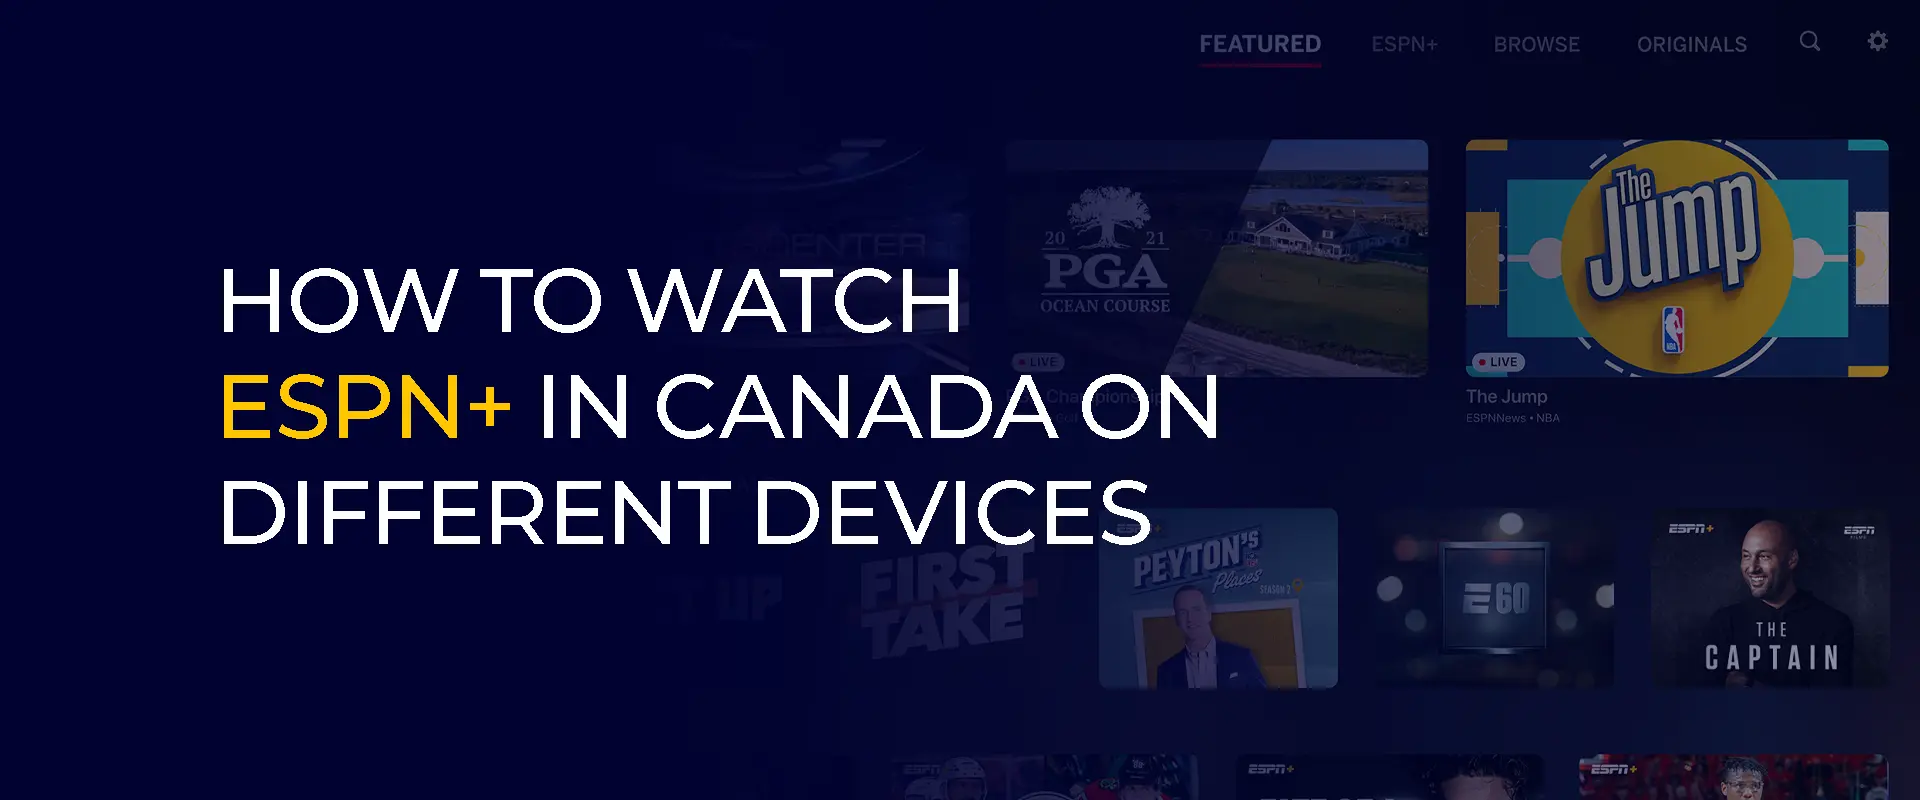 Como assistir ESPN+ no Canadá em diferentes dispositivos